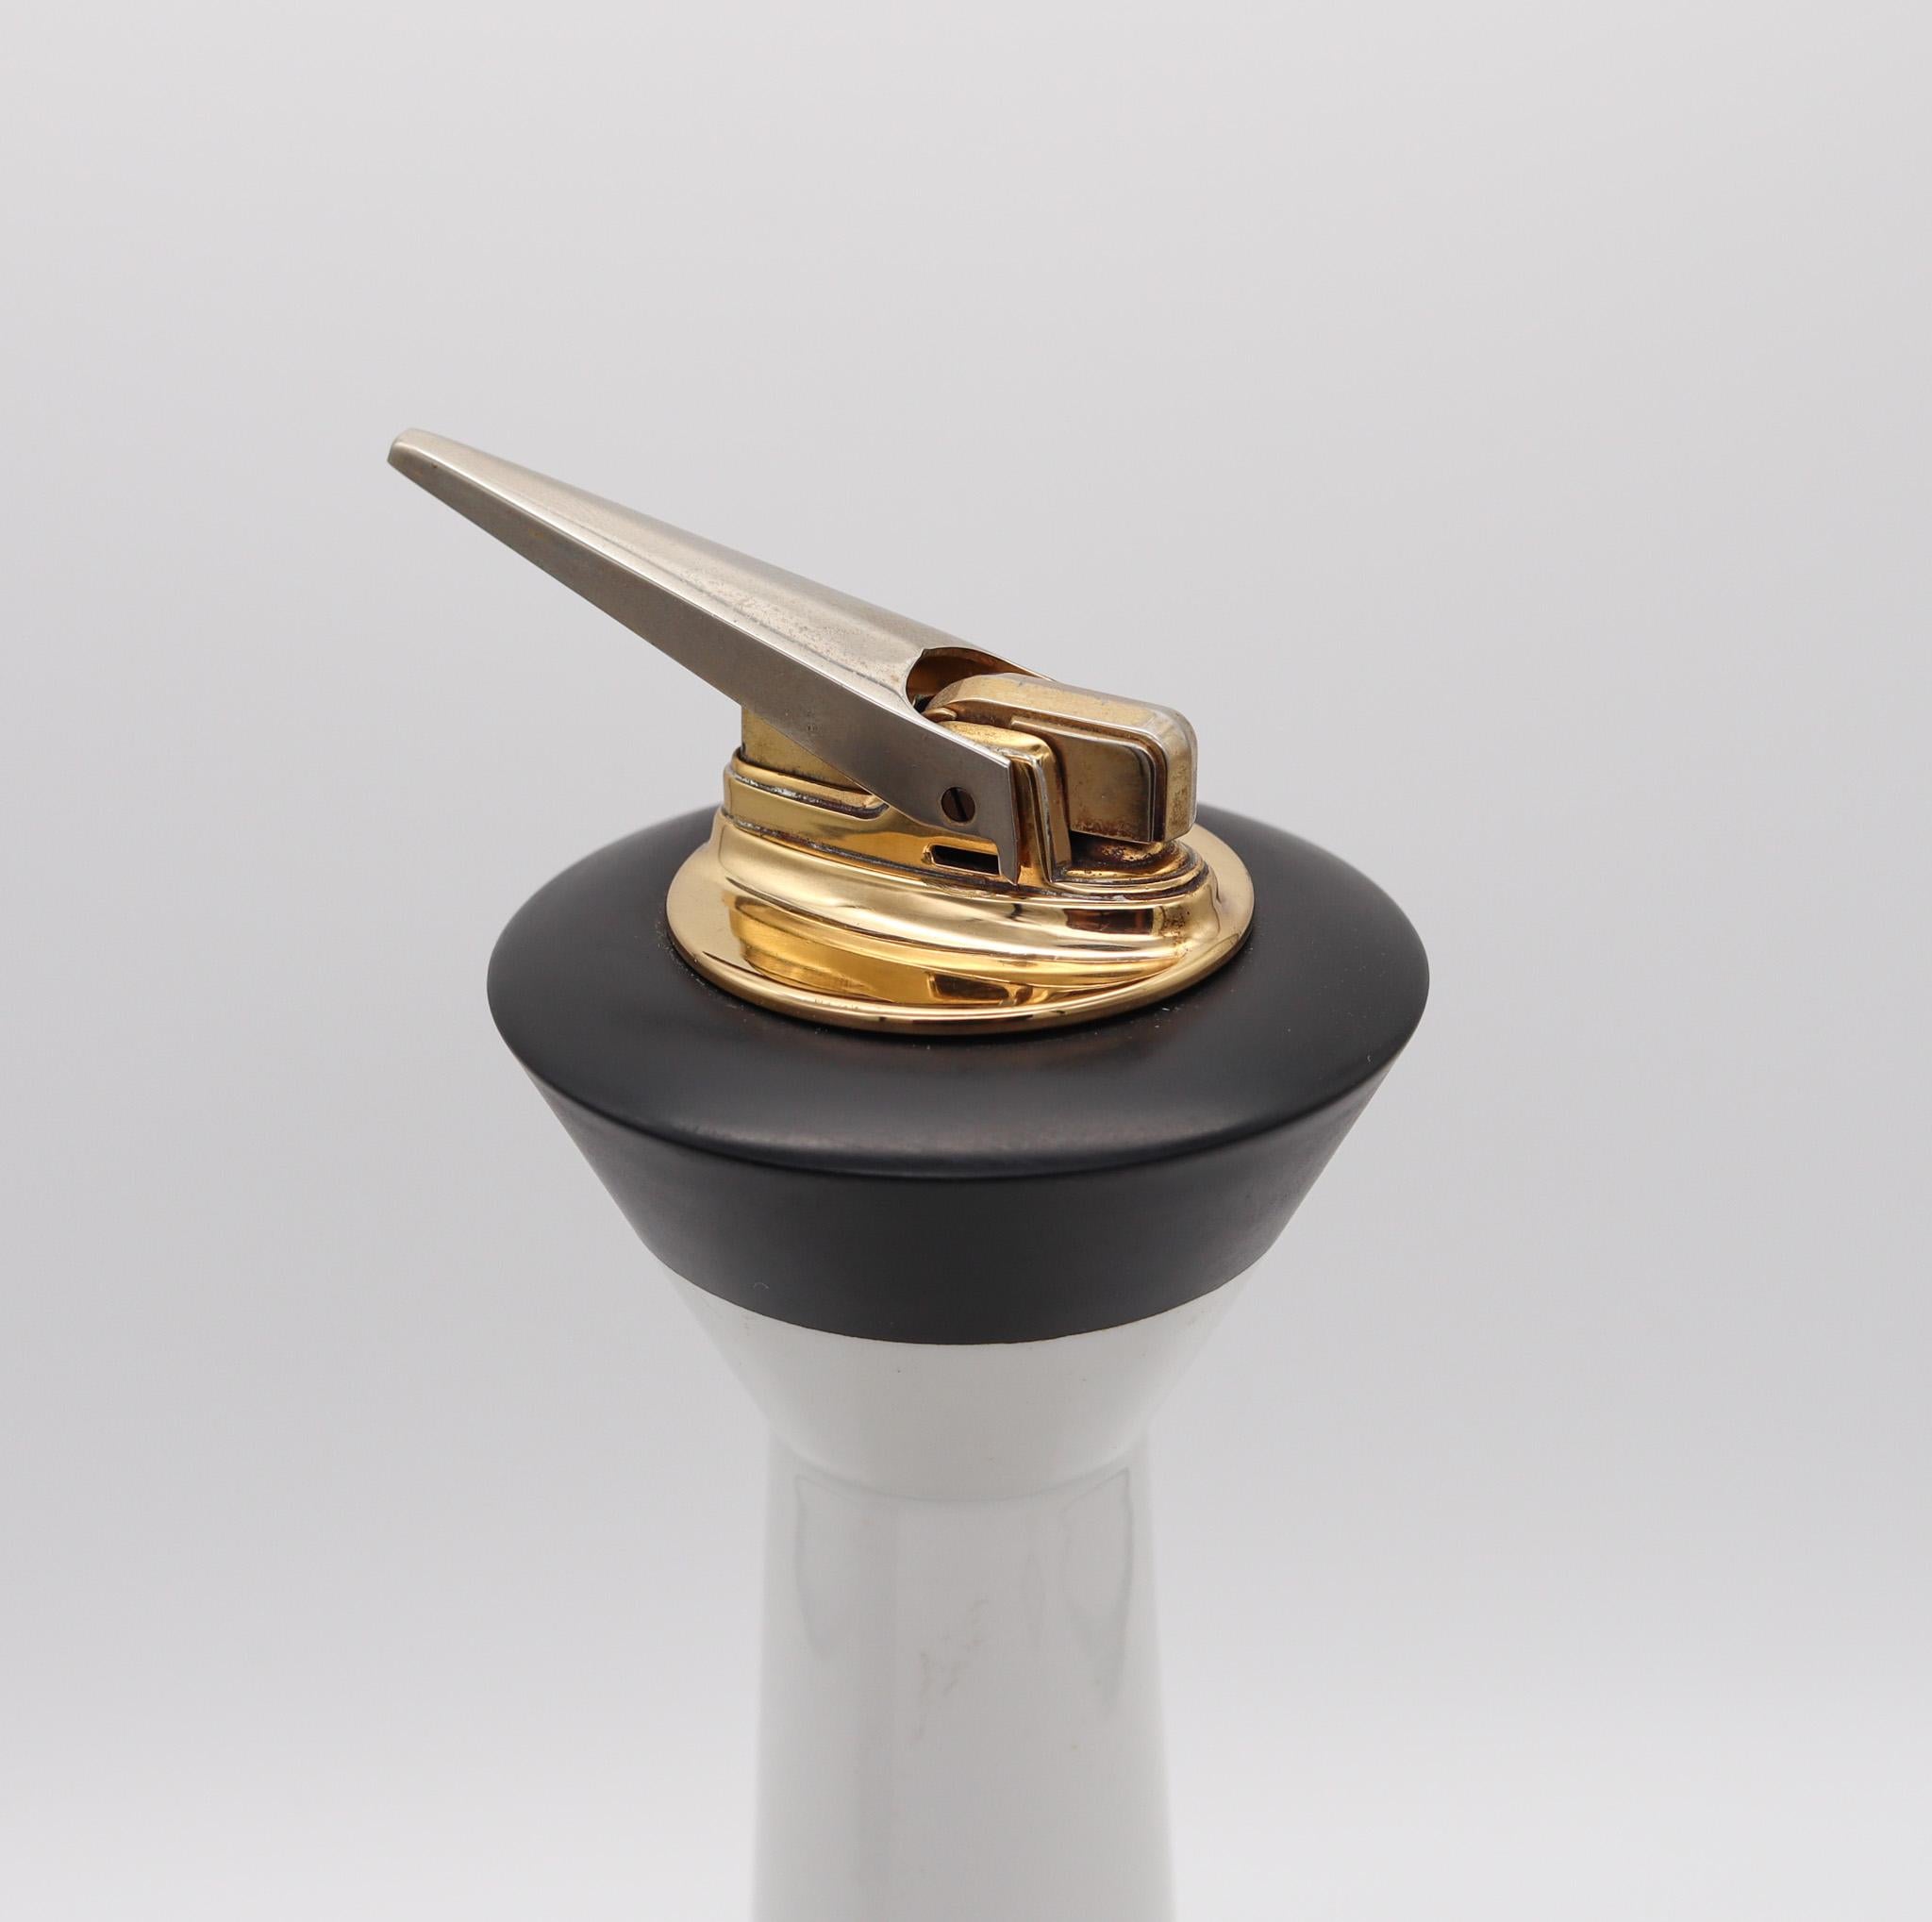 Benzinfeuerzeug für den Schreibtisch, entworfen von Harold Sitterle (1921-1993) für Ronson.

Fabelhaftes avantgardistisches Benzin-Tischfeuerzeug, 1954 von dem amerikanischen Künstler Harold Sitterle für die Ronson Company entworfen. Dieses